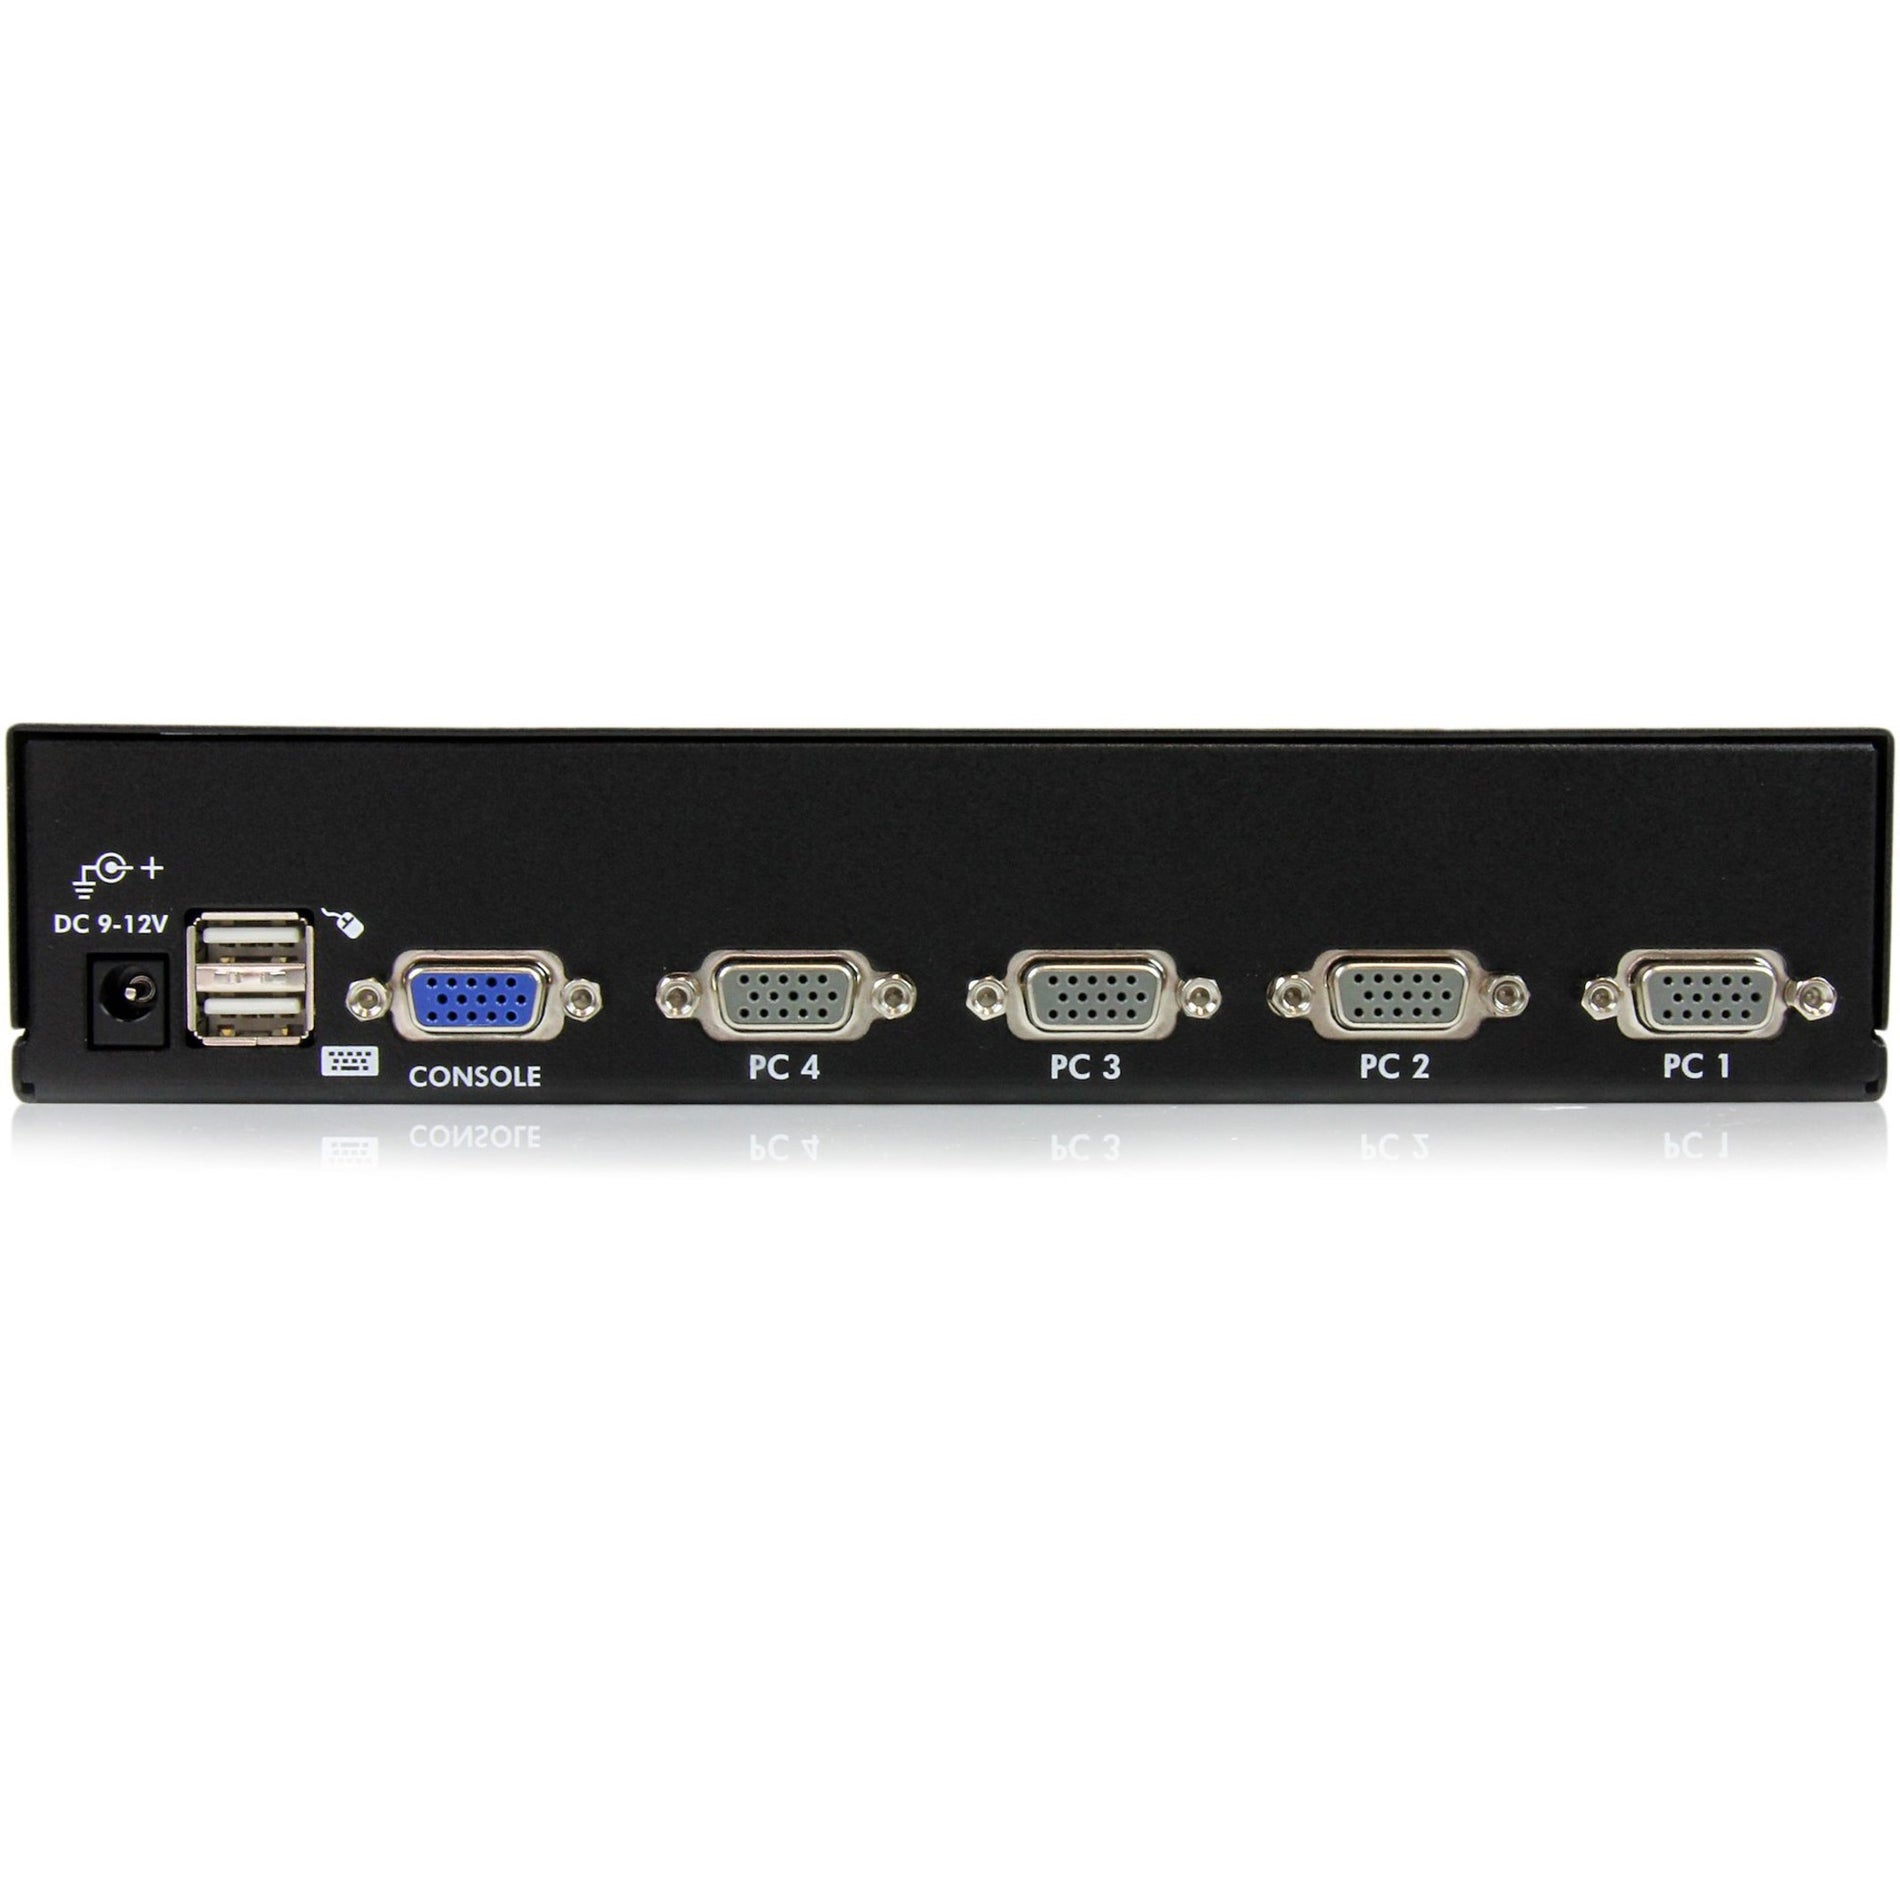 スタートレック・ドットコム SV431DUSBU 4 ポート 1U ラックマウント USB KVM スイッチ with OSD、最大ビデオ解像度 1920 x 1440、3 年間の限定保証